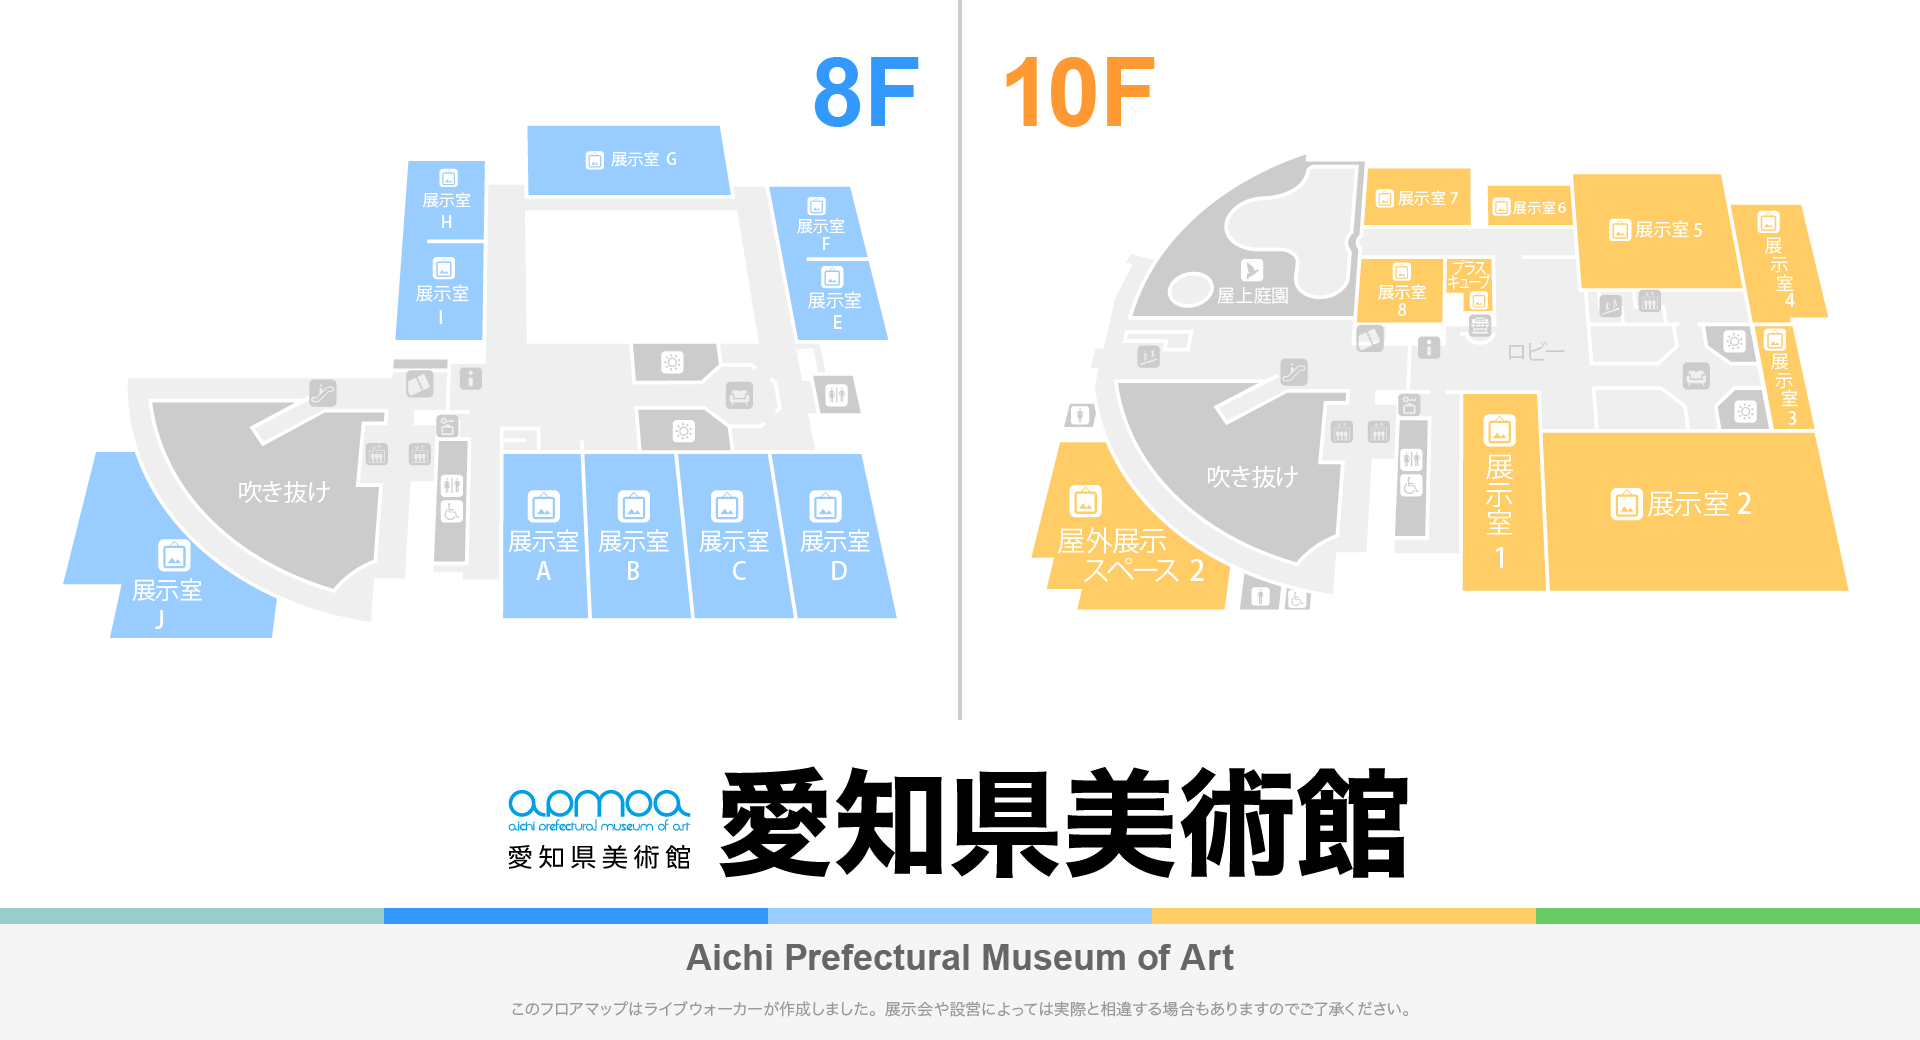 愛知県美術館のフロアマップ